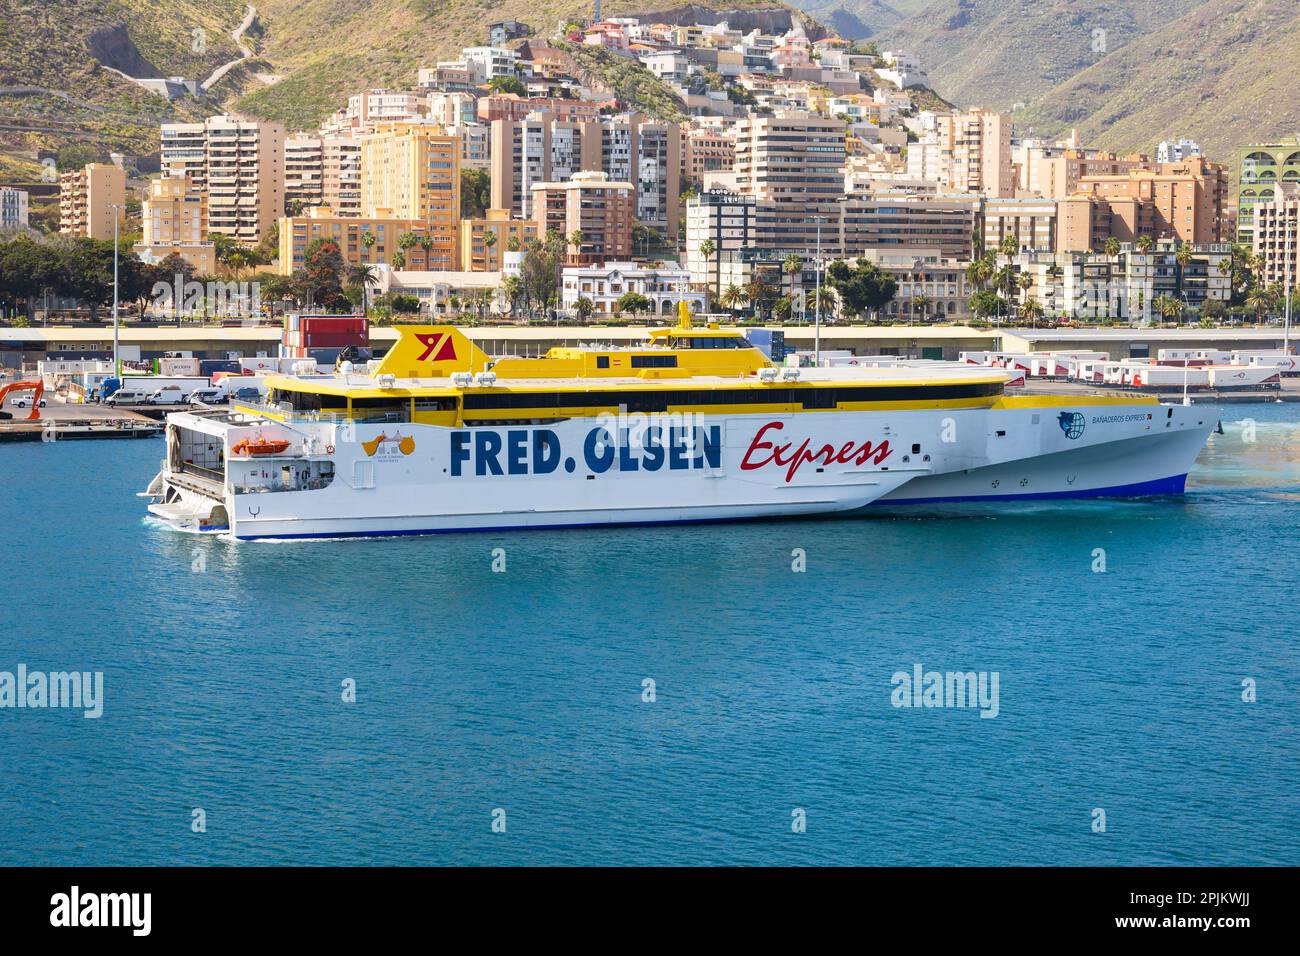 Schnelle Trimaran Passagier- und Fahrzeugfähre, Fred Olsen Express, Banaderos Express, Abfahrt Hafen in Santa Cruz de Tenerife, Kanarische Inseln, Spanien Stockfoto